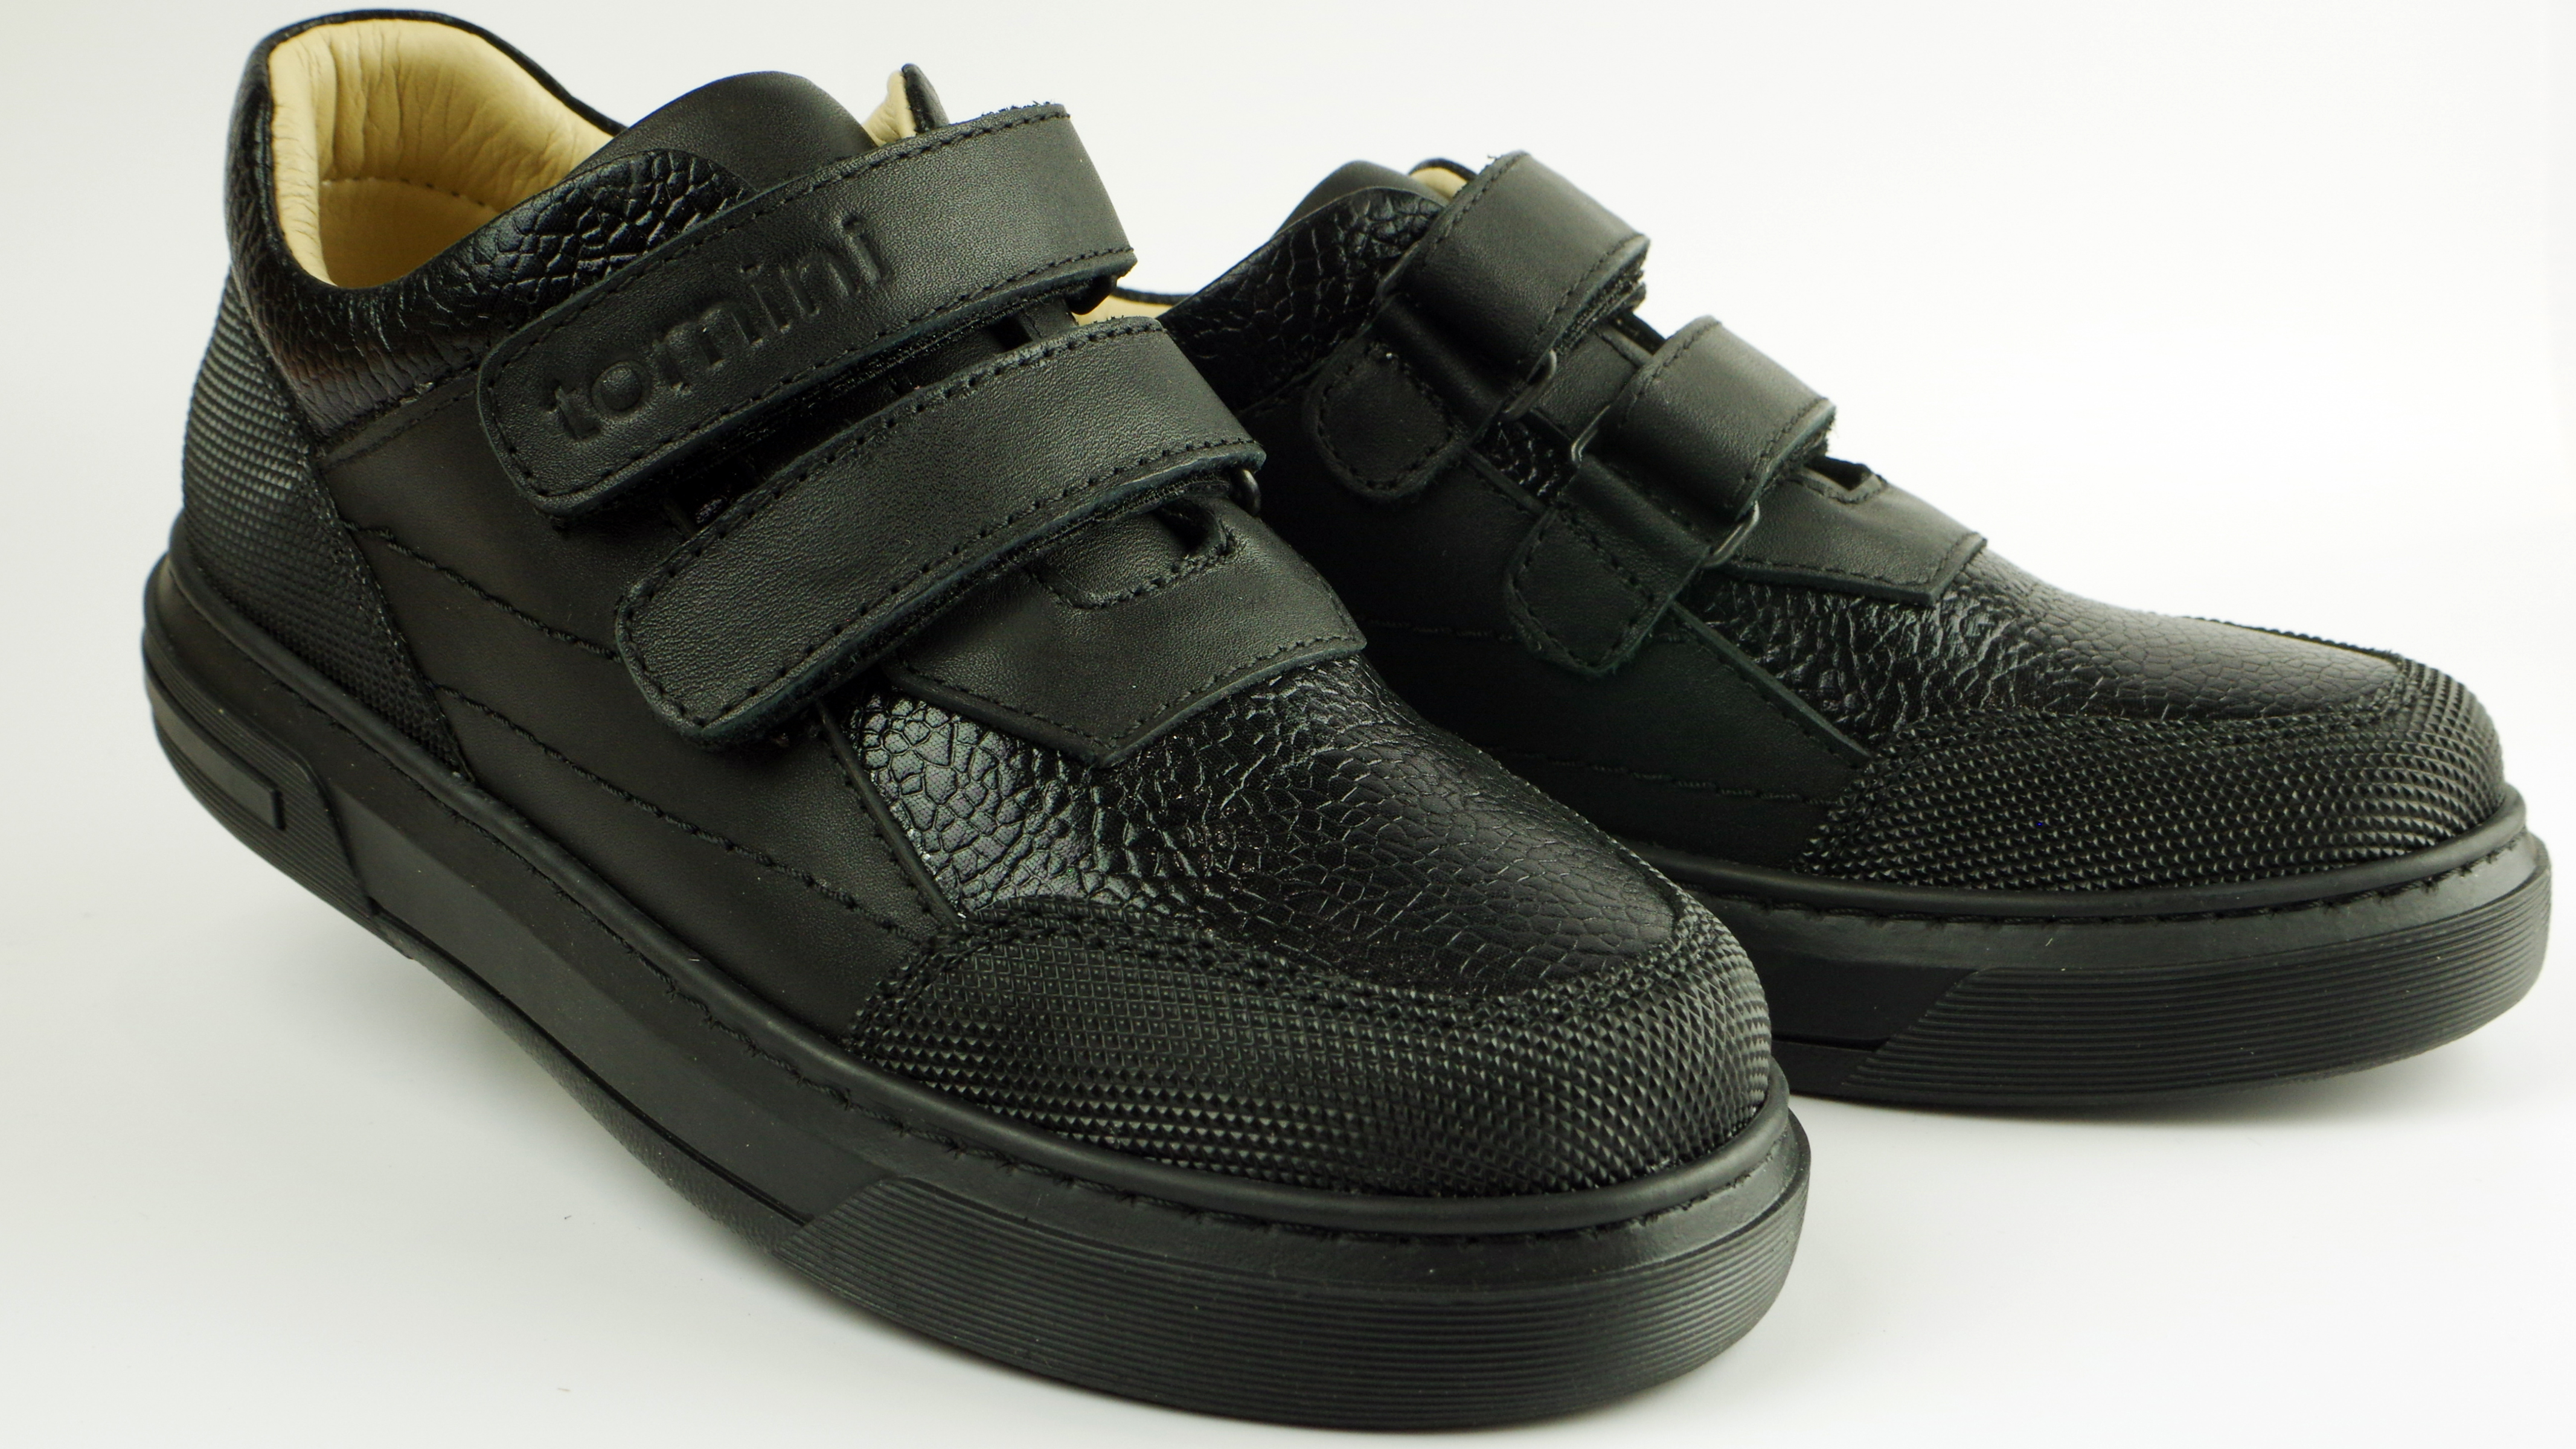 Туфлі дитячі (2113) для хлопчика, матеріал Натуральна шкіра, Чорний колір, 31-36 розміри – Sole Kids. Фото 2